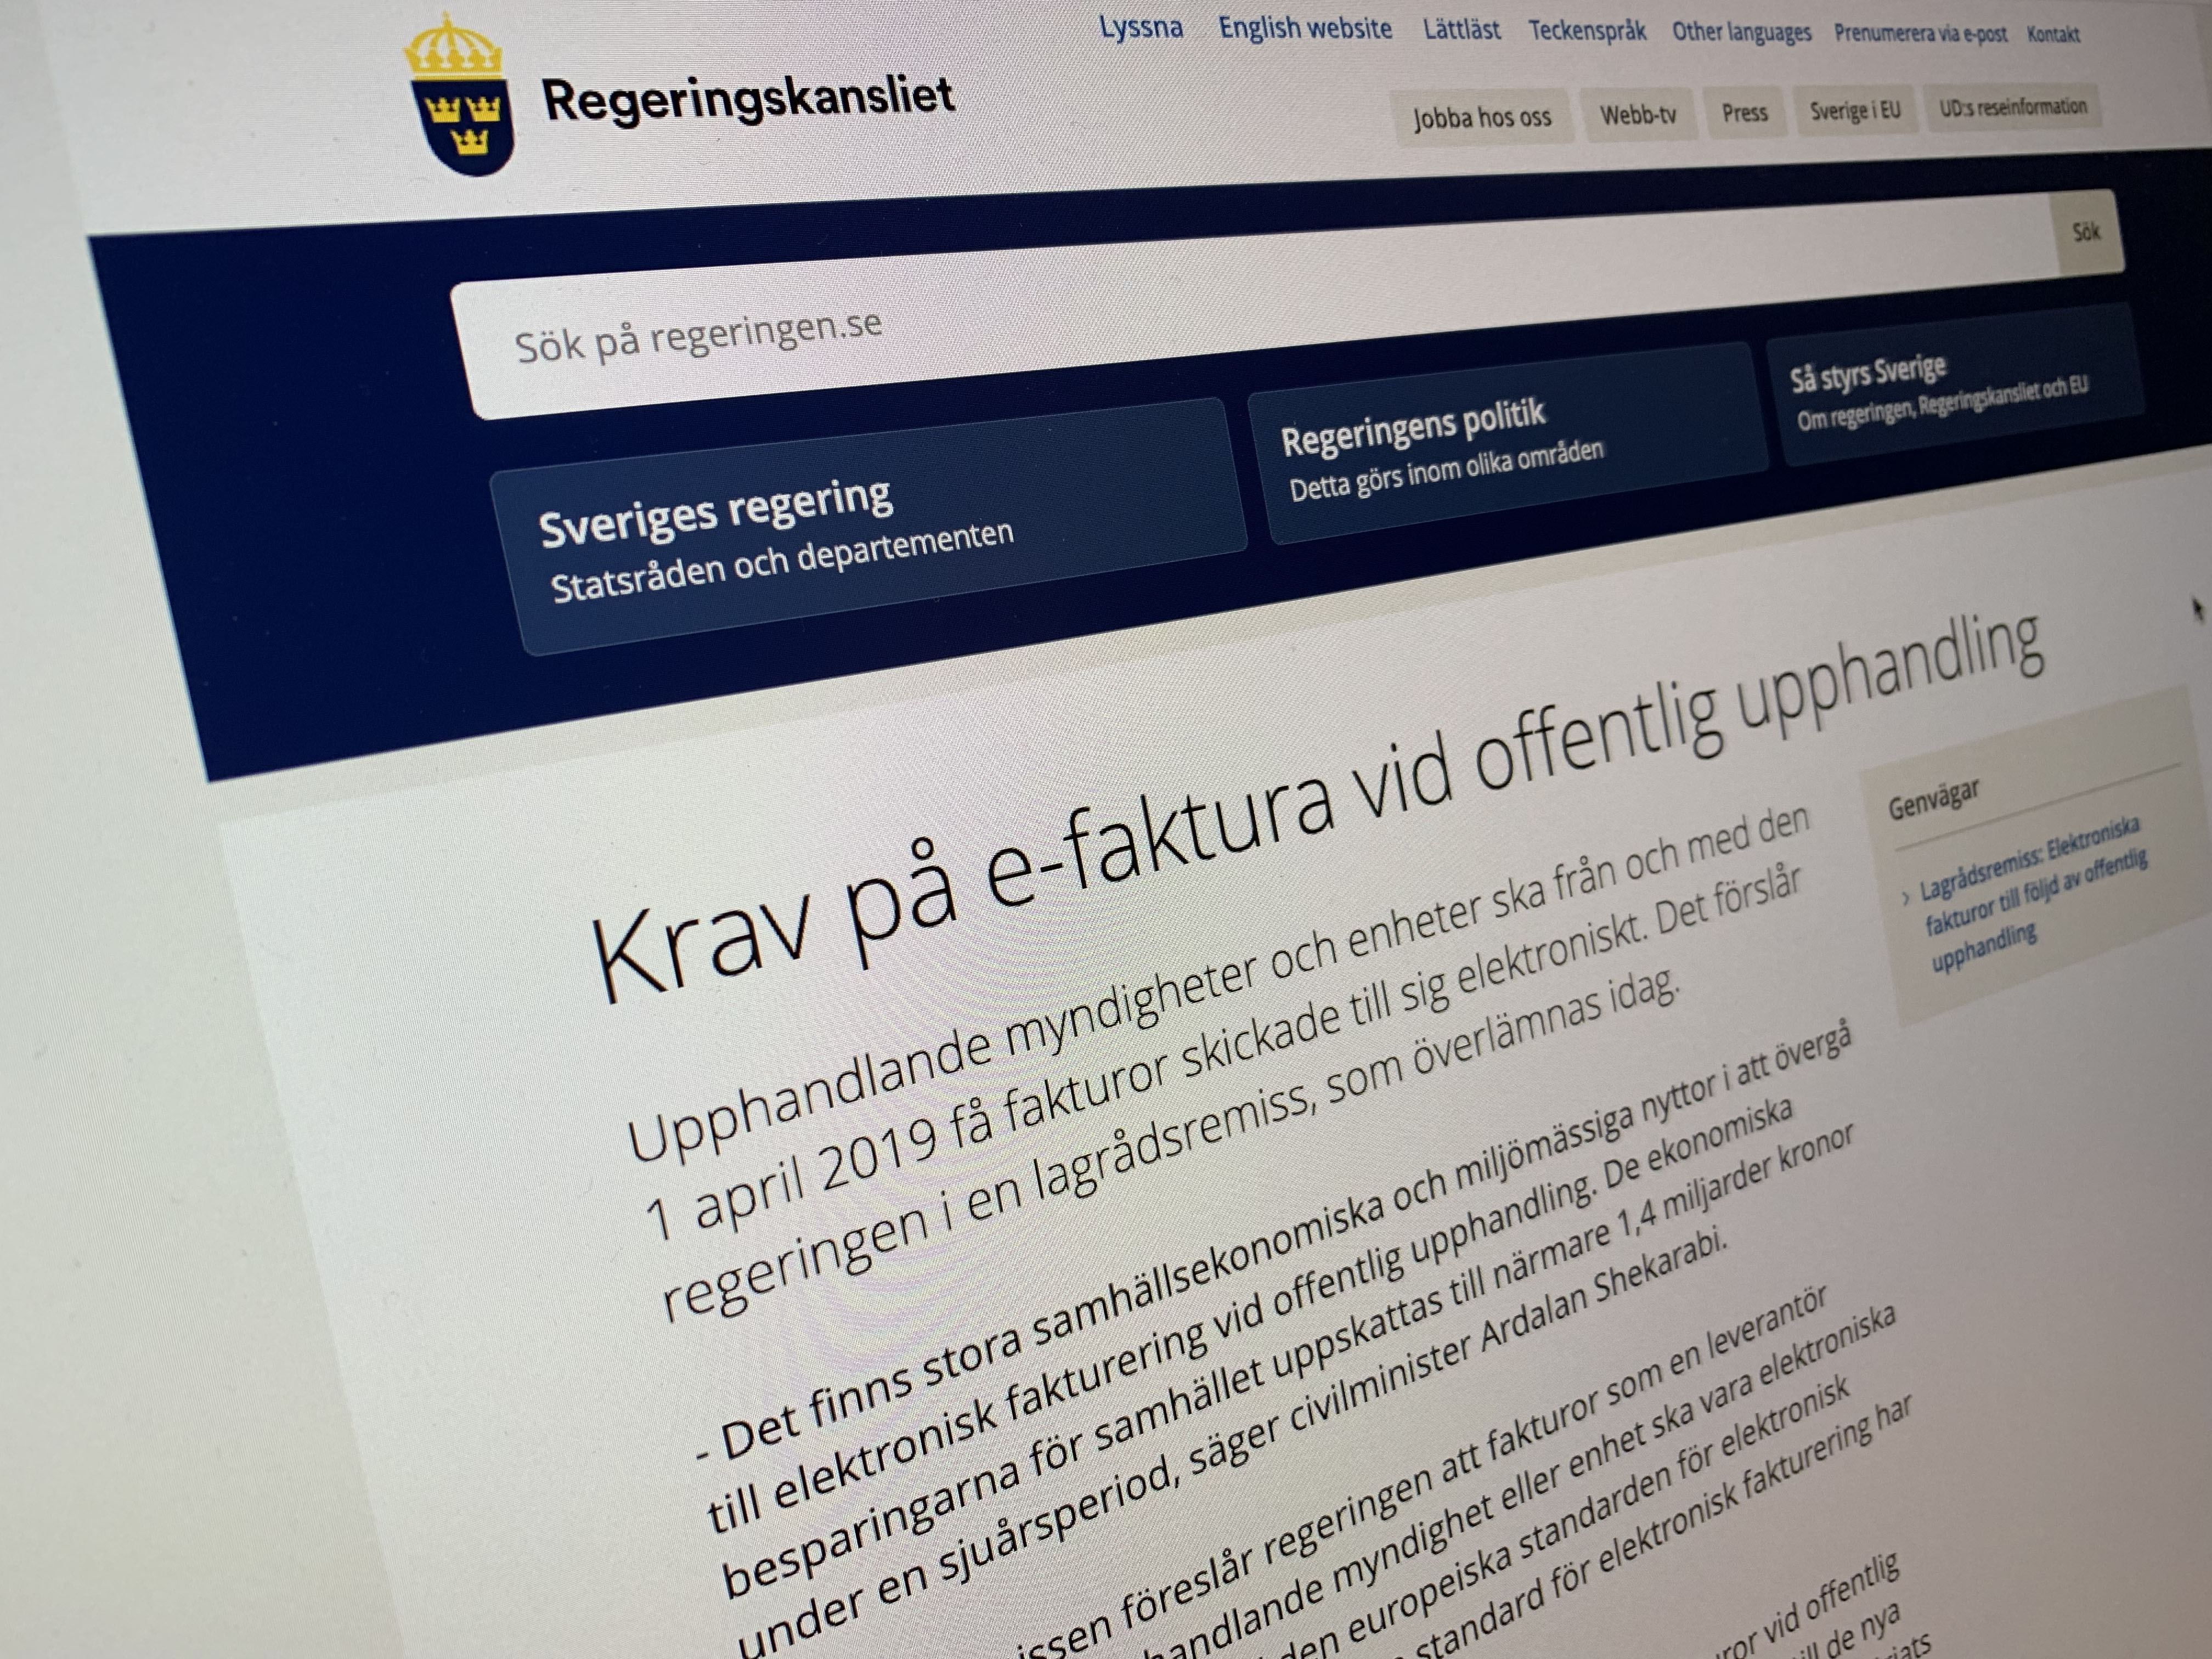 Lagen om krav på e-faktura - Nytt nordiskt samarbete löser utmaningen!